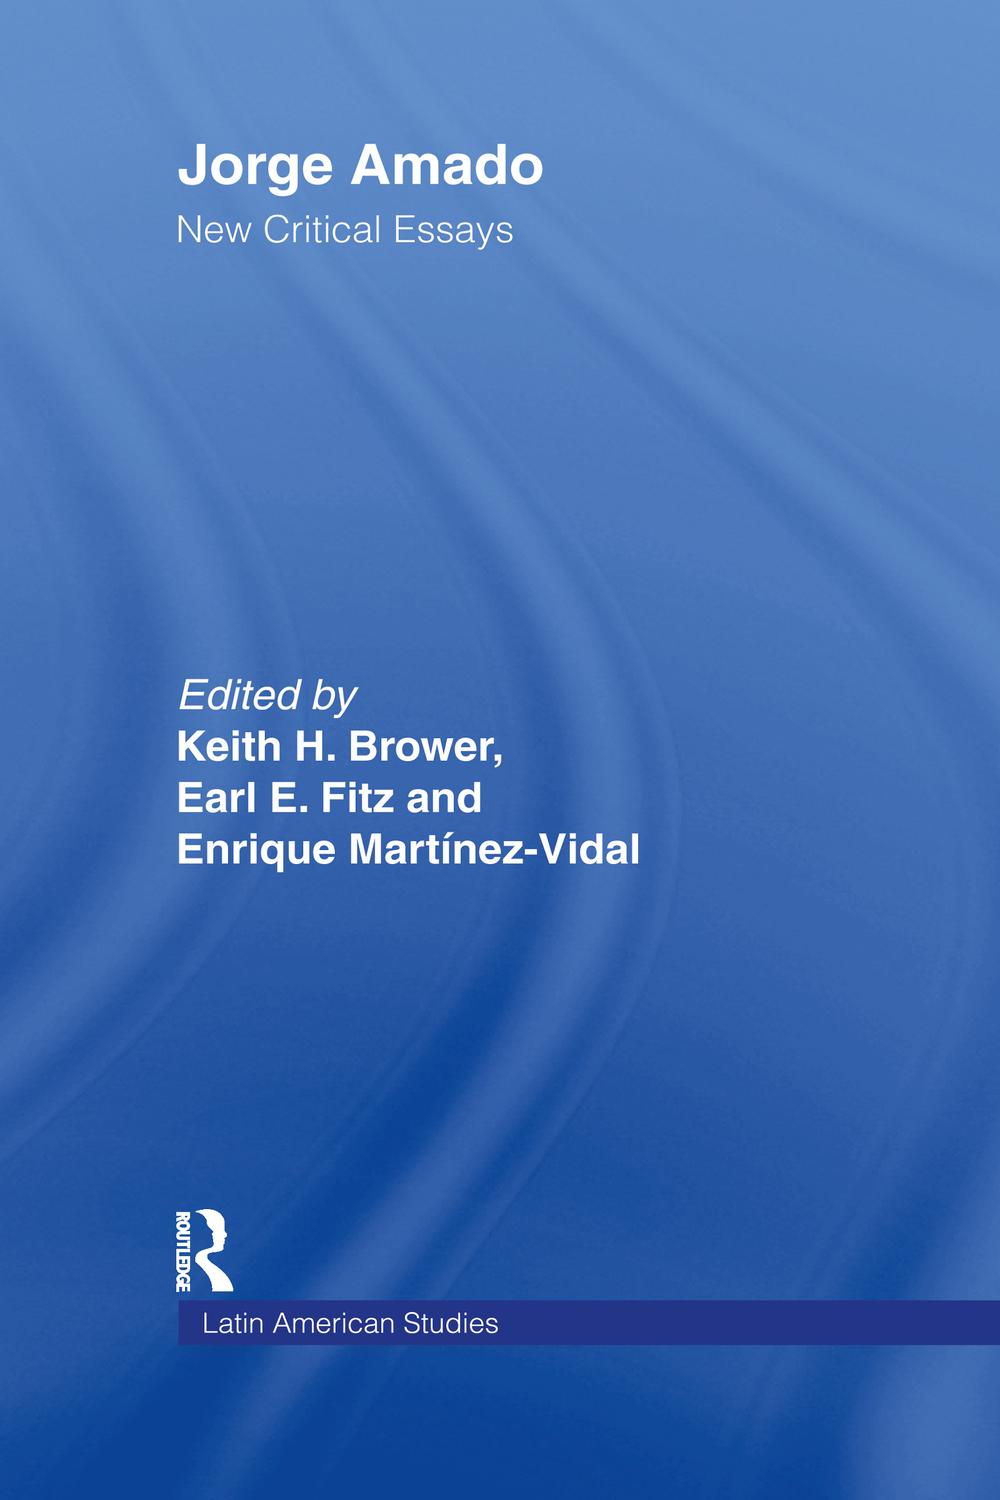 Jorge Amado - Earl Fitz, Keith Brower, Enrique Martinez-Vidal